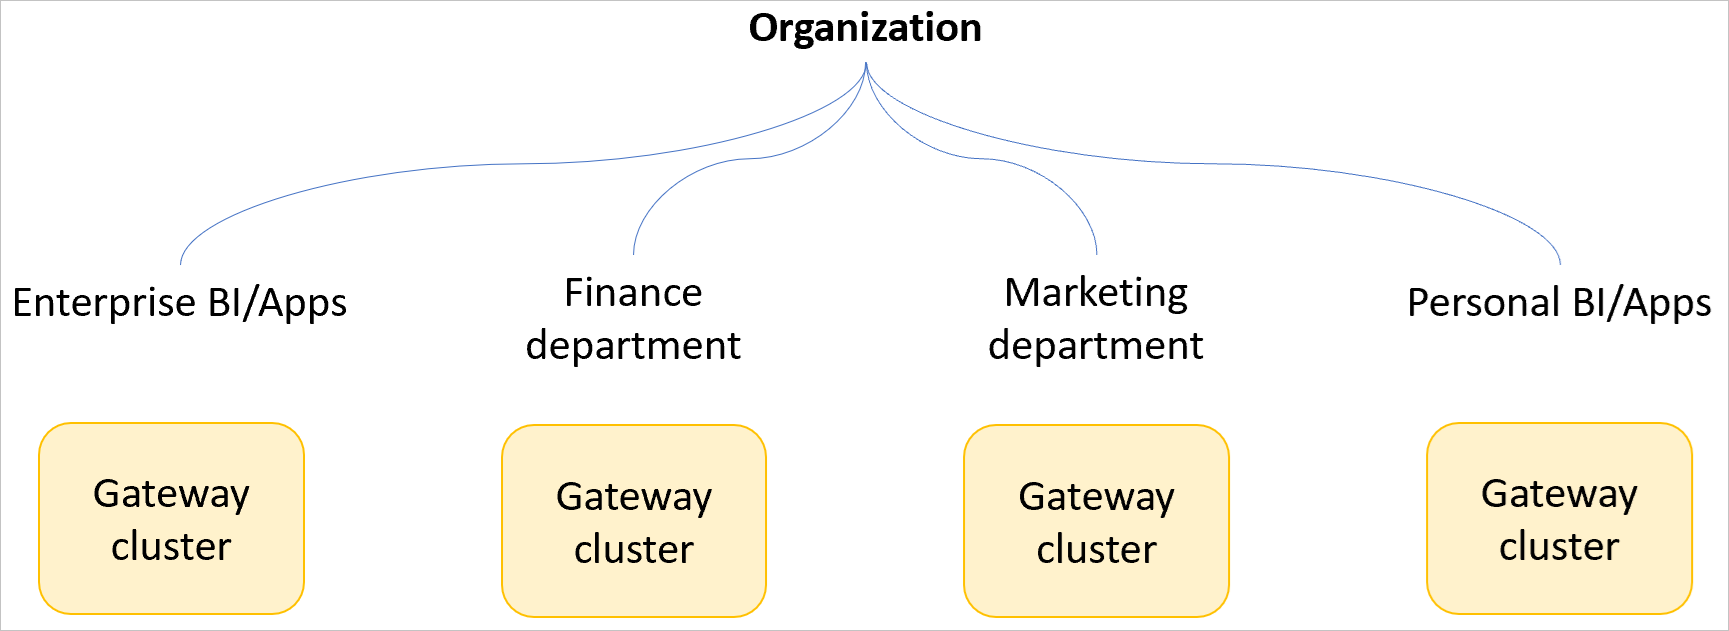 Imagen de una organización de ejemplo con clústeres de puerta de enlace separados para BI y aplicaciones empresariales, el departamento de finanzas, el departamento de marketing y BI y aplicaciones personales.